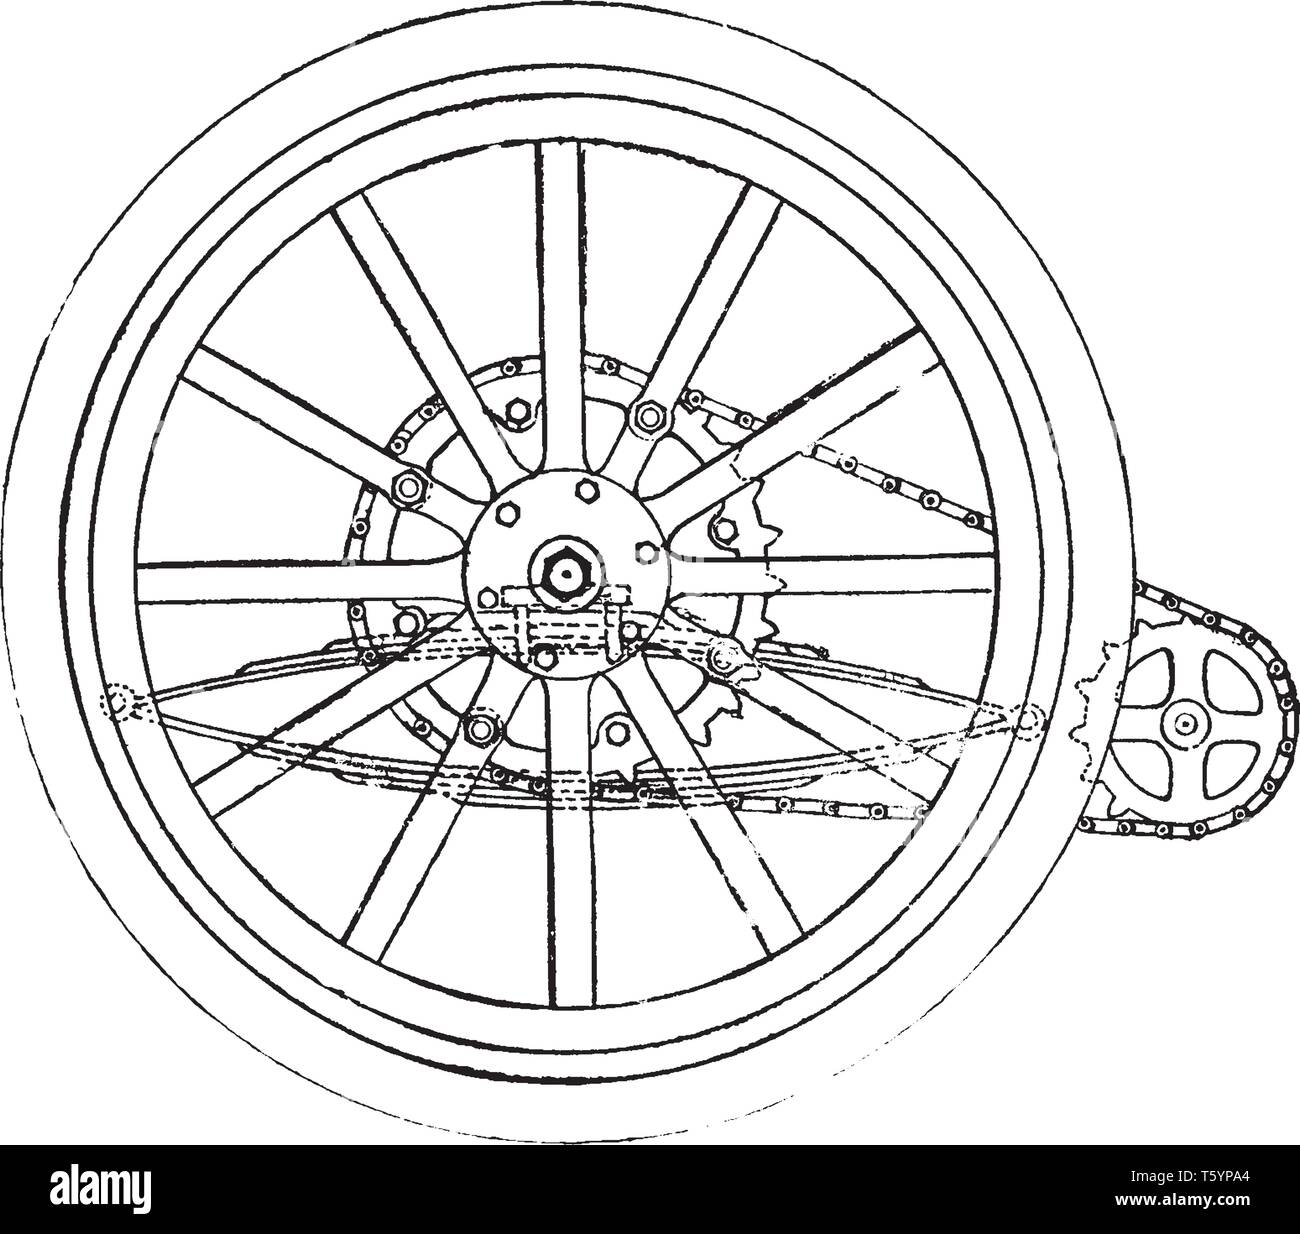 Transmission de puissance d'une roue d'une voiture équipée d'une double chaîne de route de l'arbre d'un cric qui est parallèle à l'axe arrière, vintage dessin ou e Illustration de Vecteur